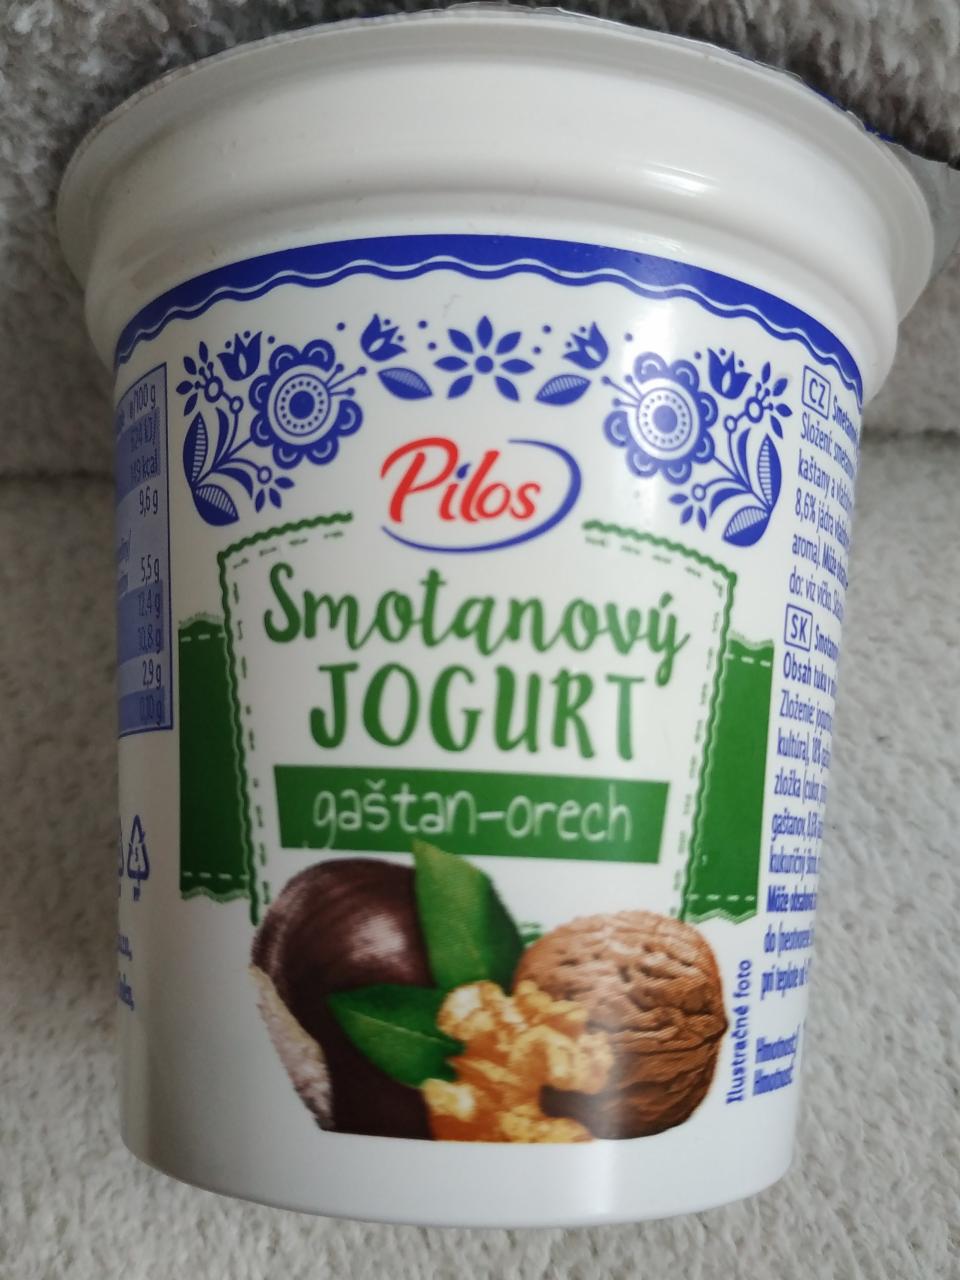 Fotografie - smotanový jogurt gaštan-orech Pilos